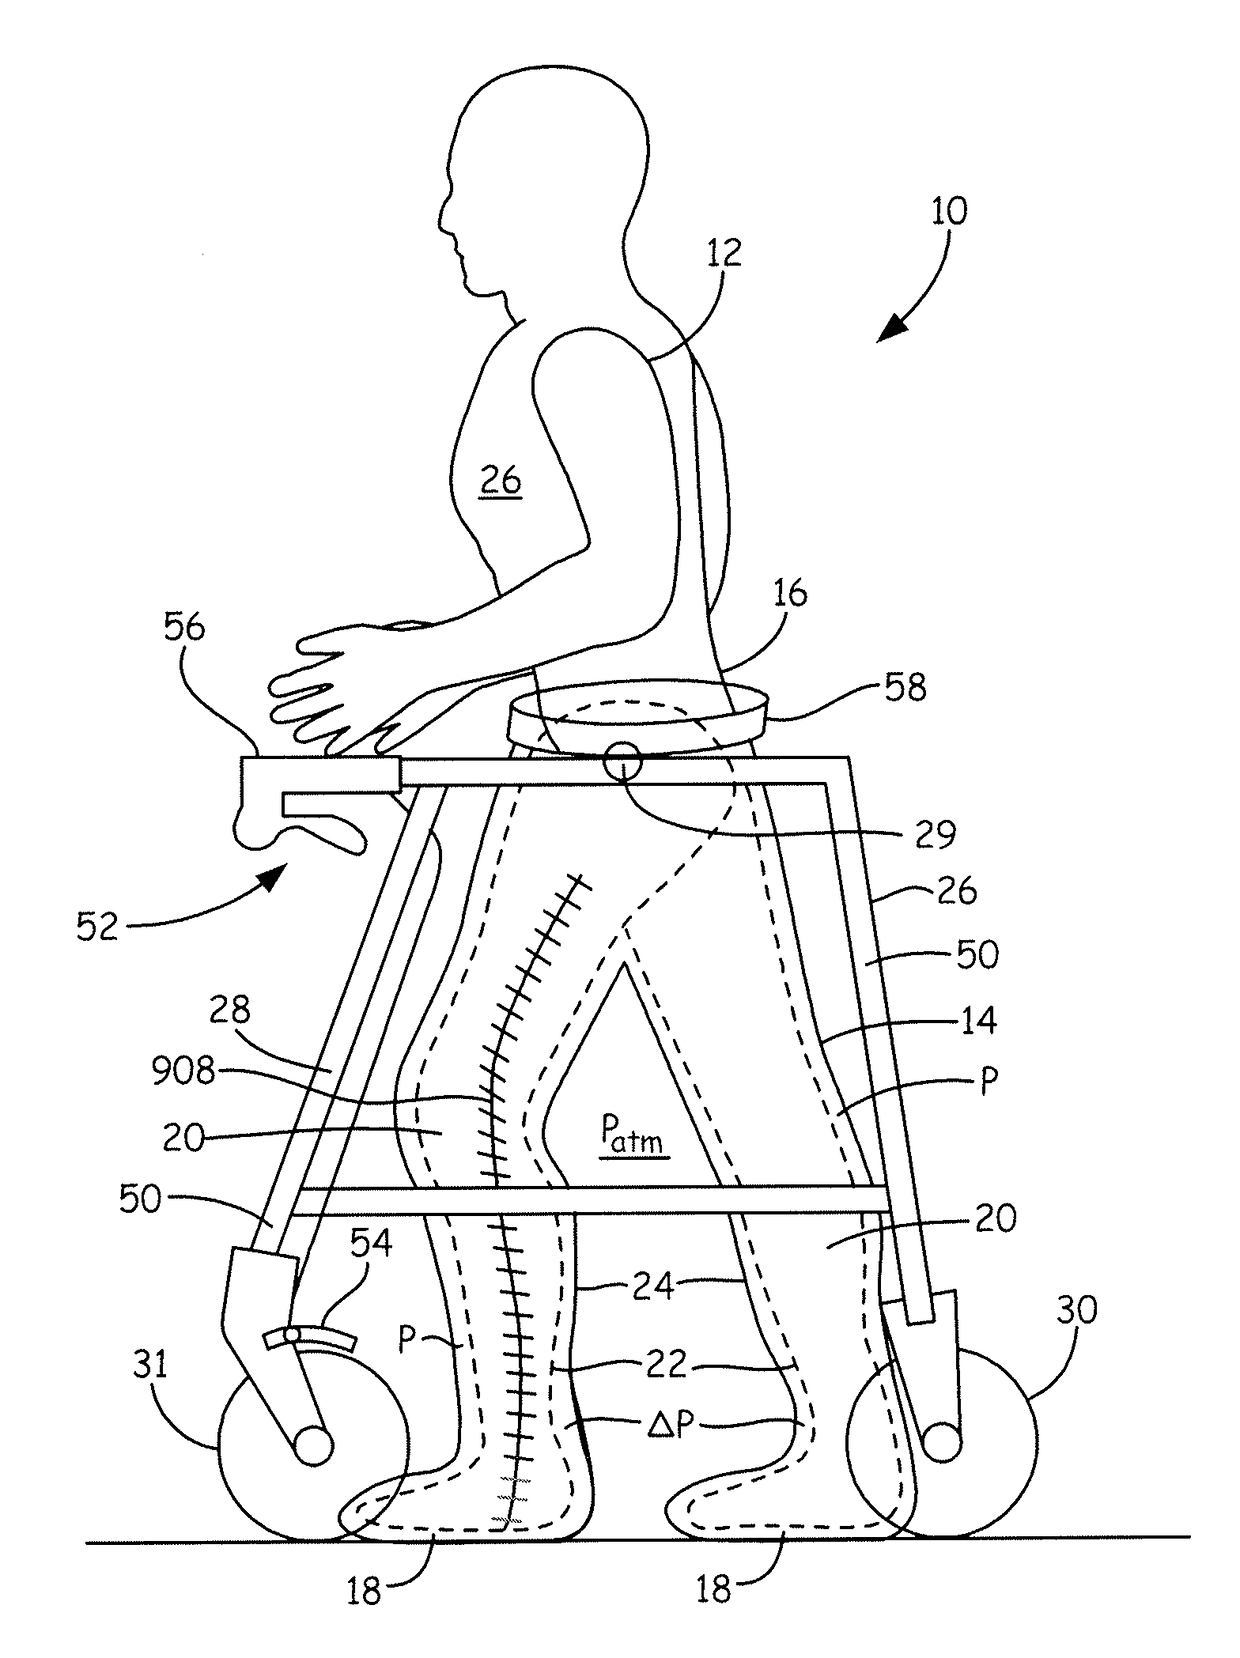 Body lift-assist walker device